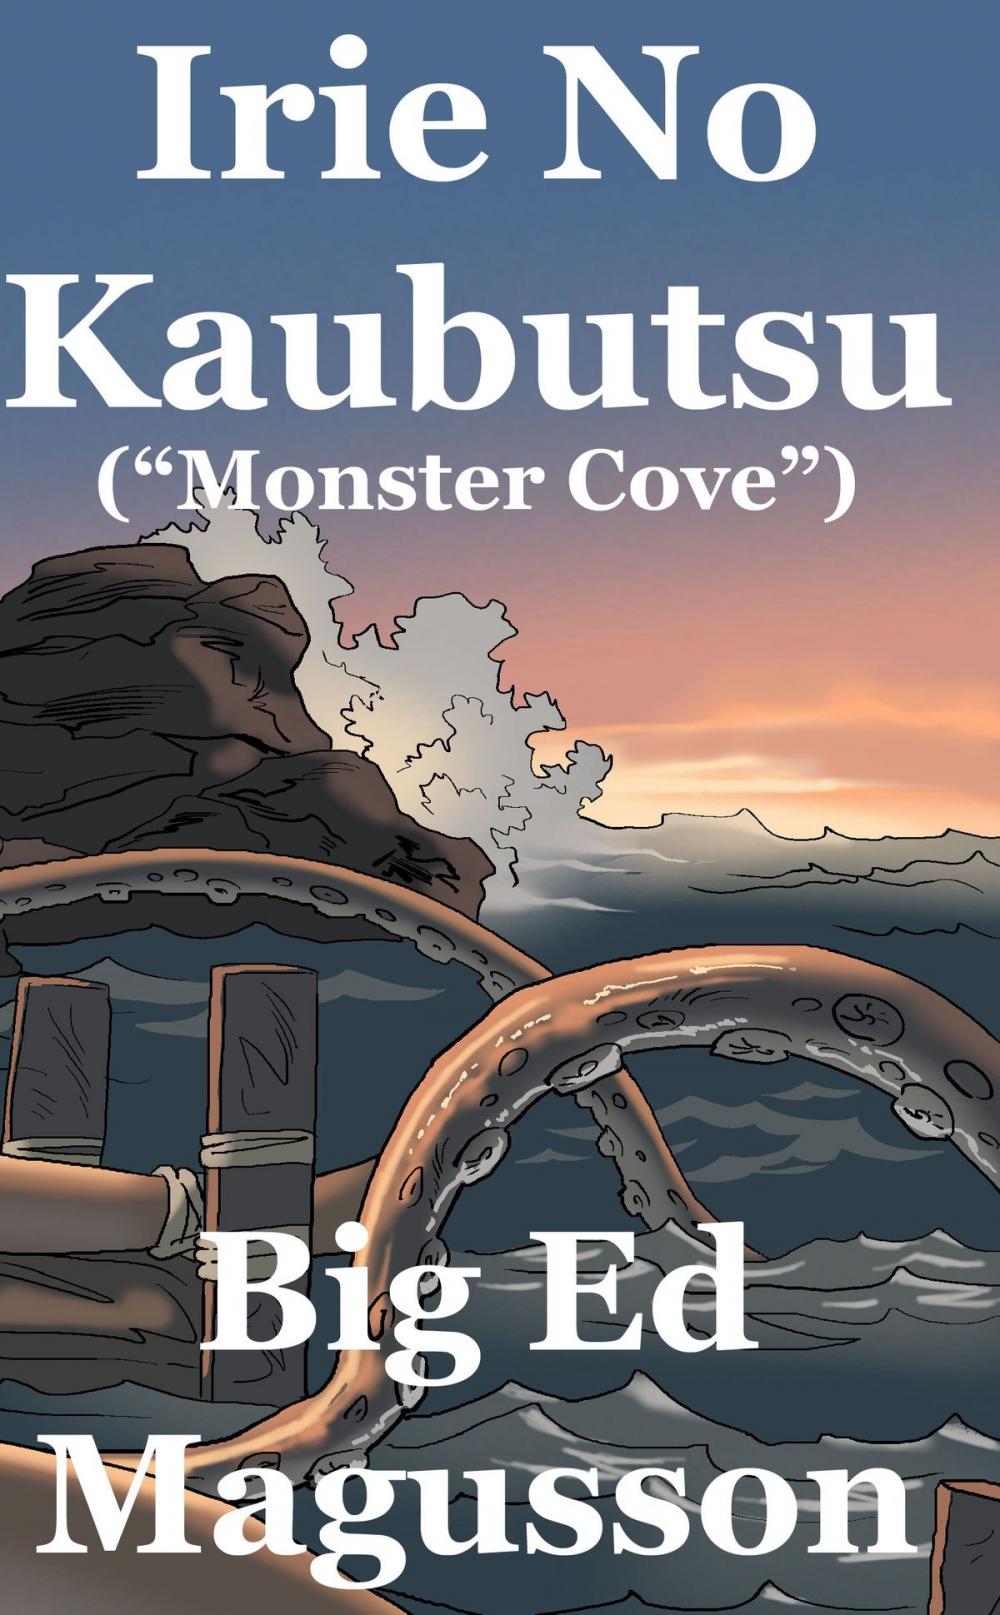 Big bigCover of Irie No Kaubutsu